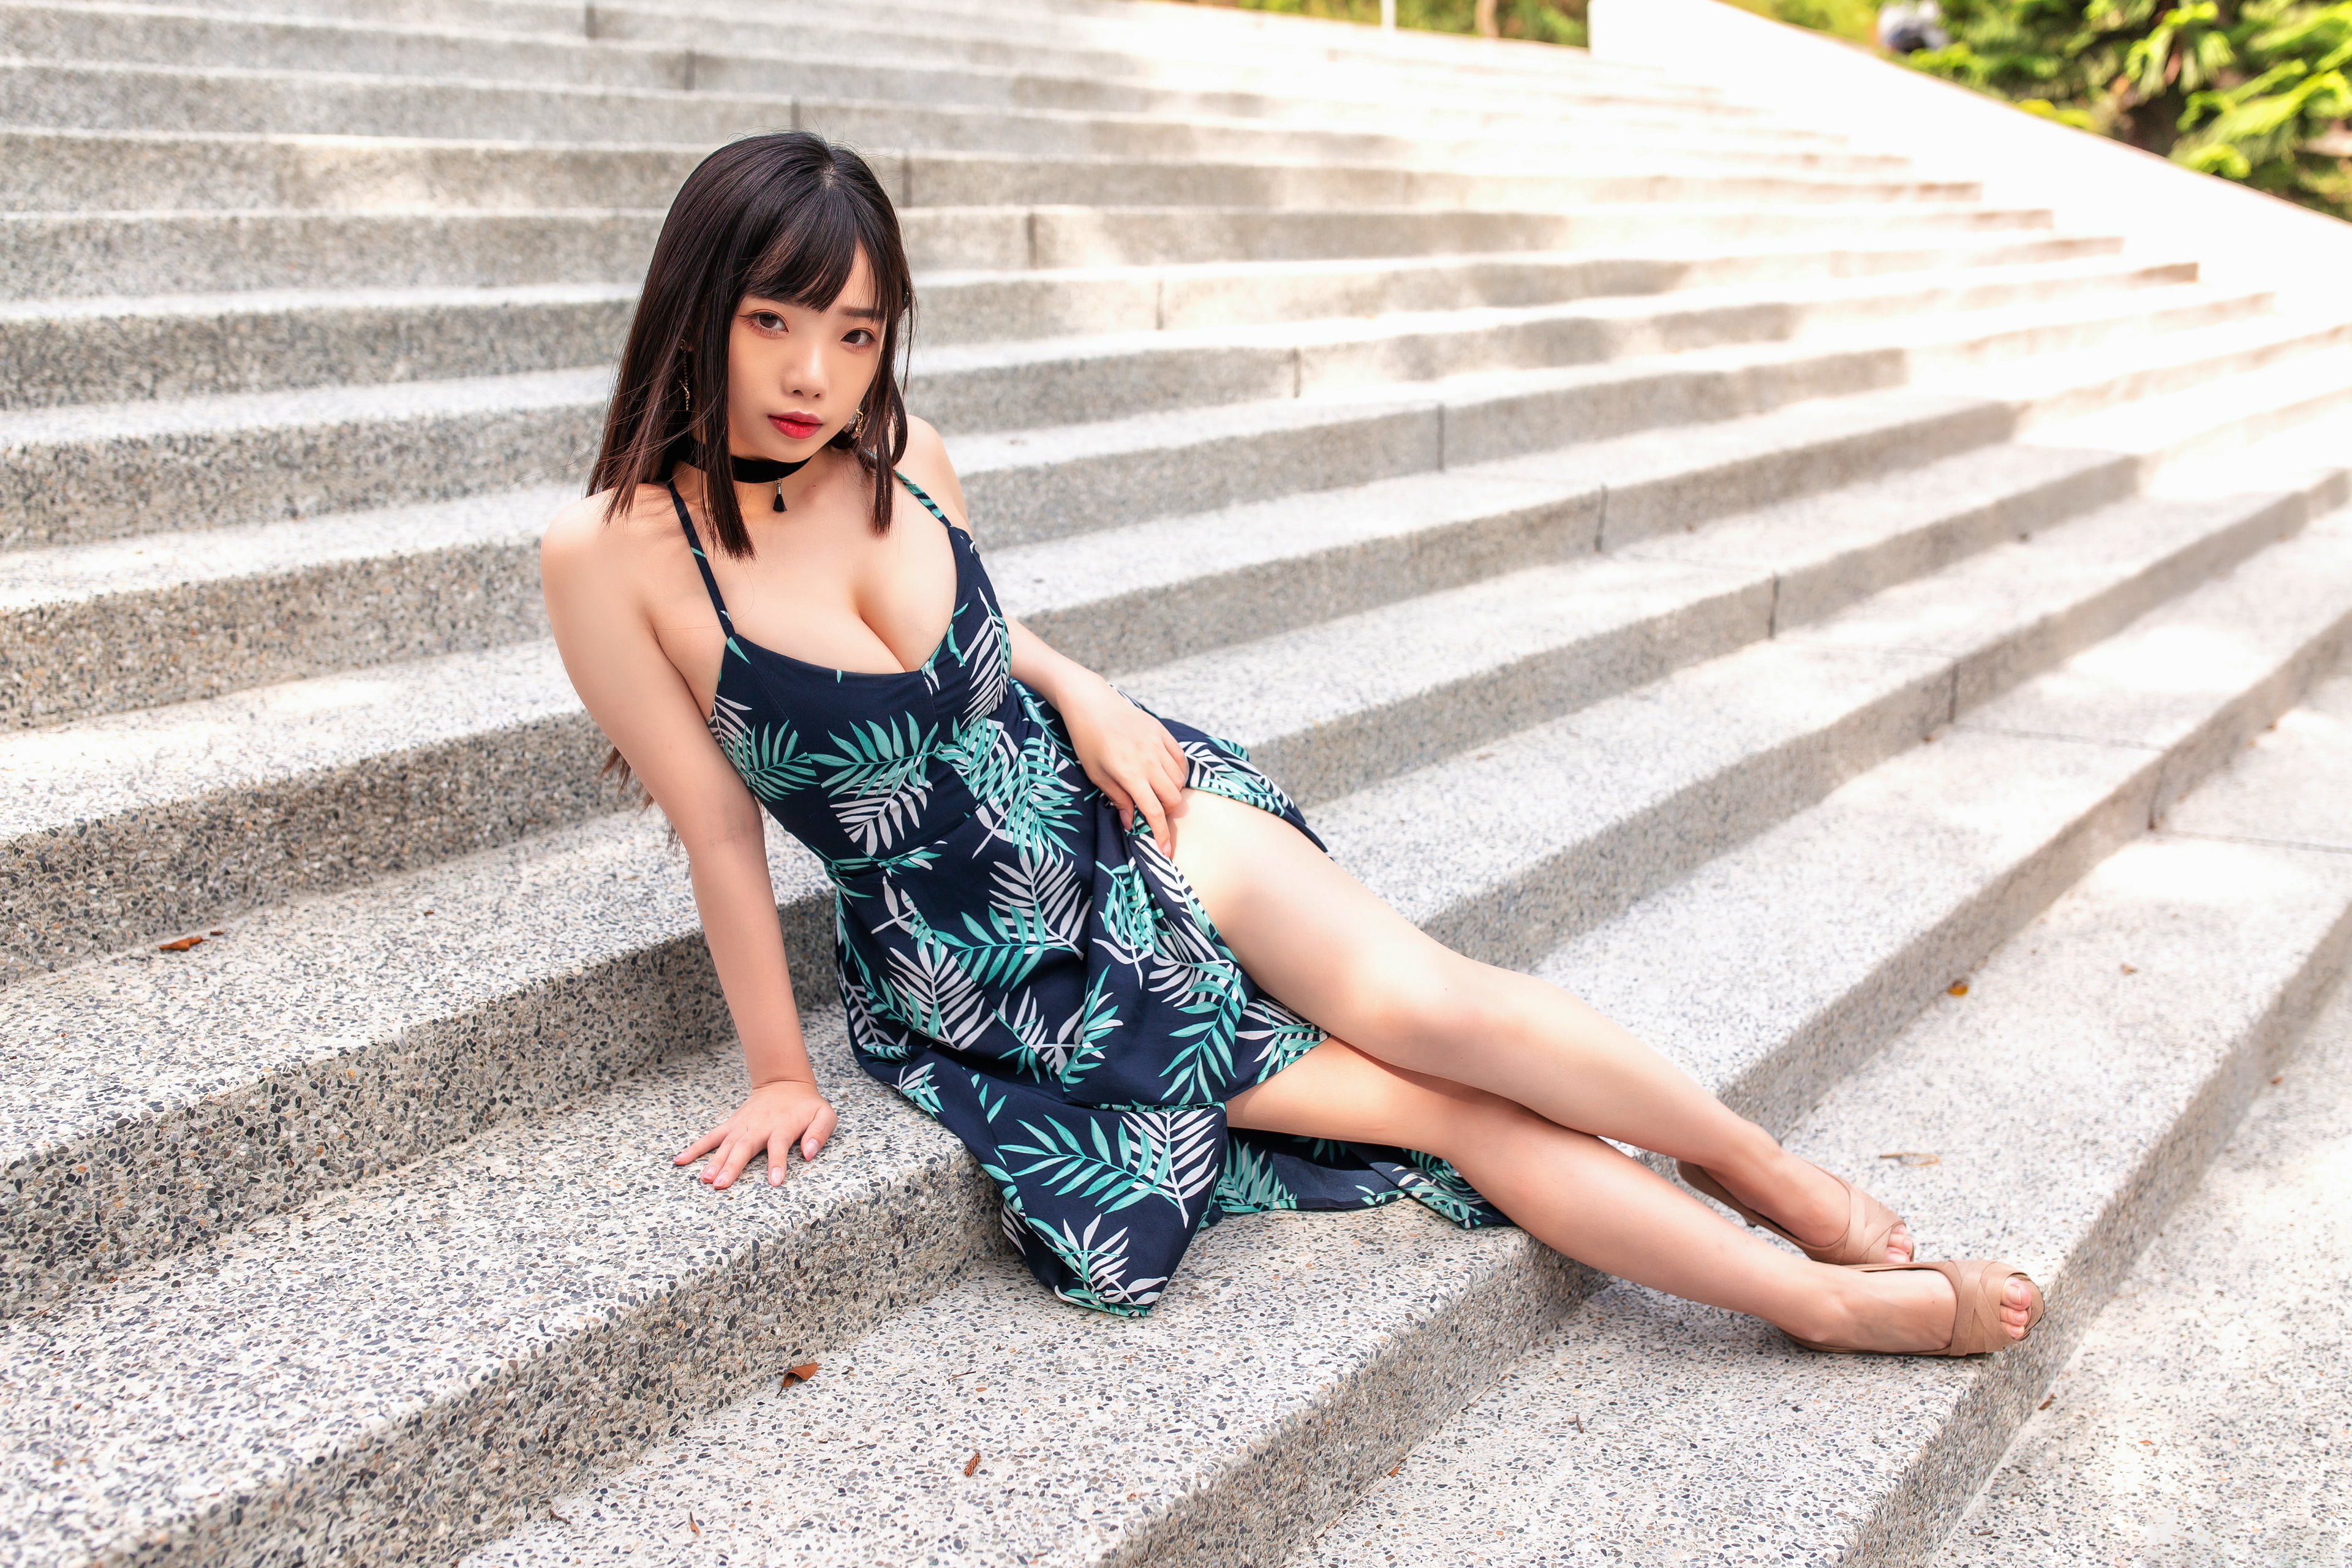 sitting, Asian, women, model, flower dress, stairs, black hair